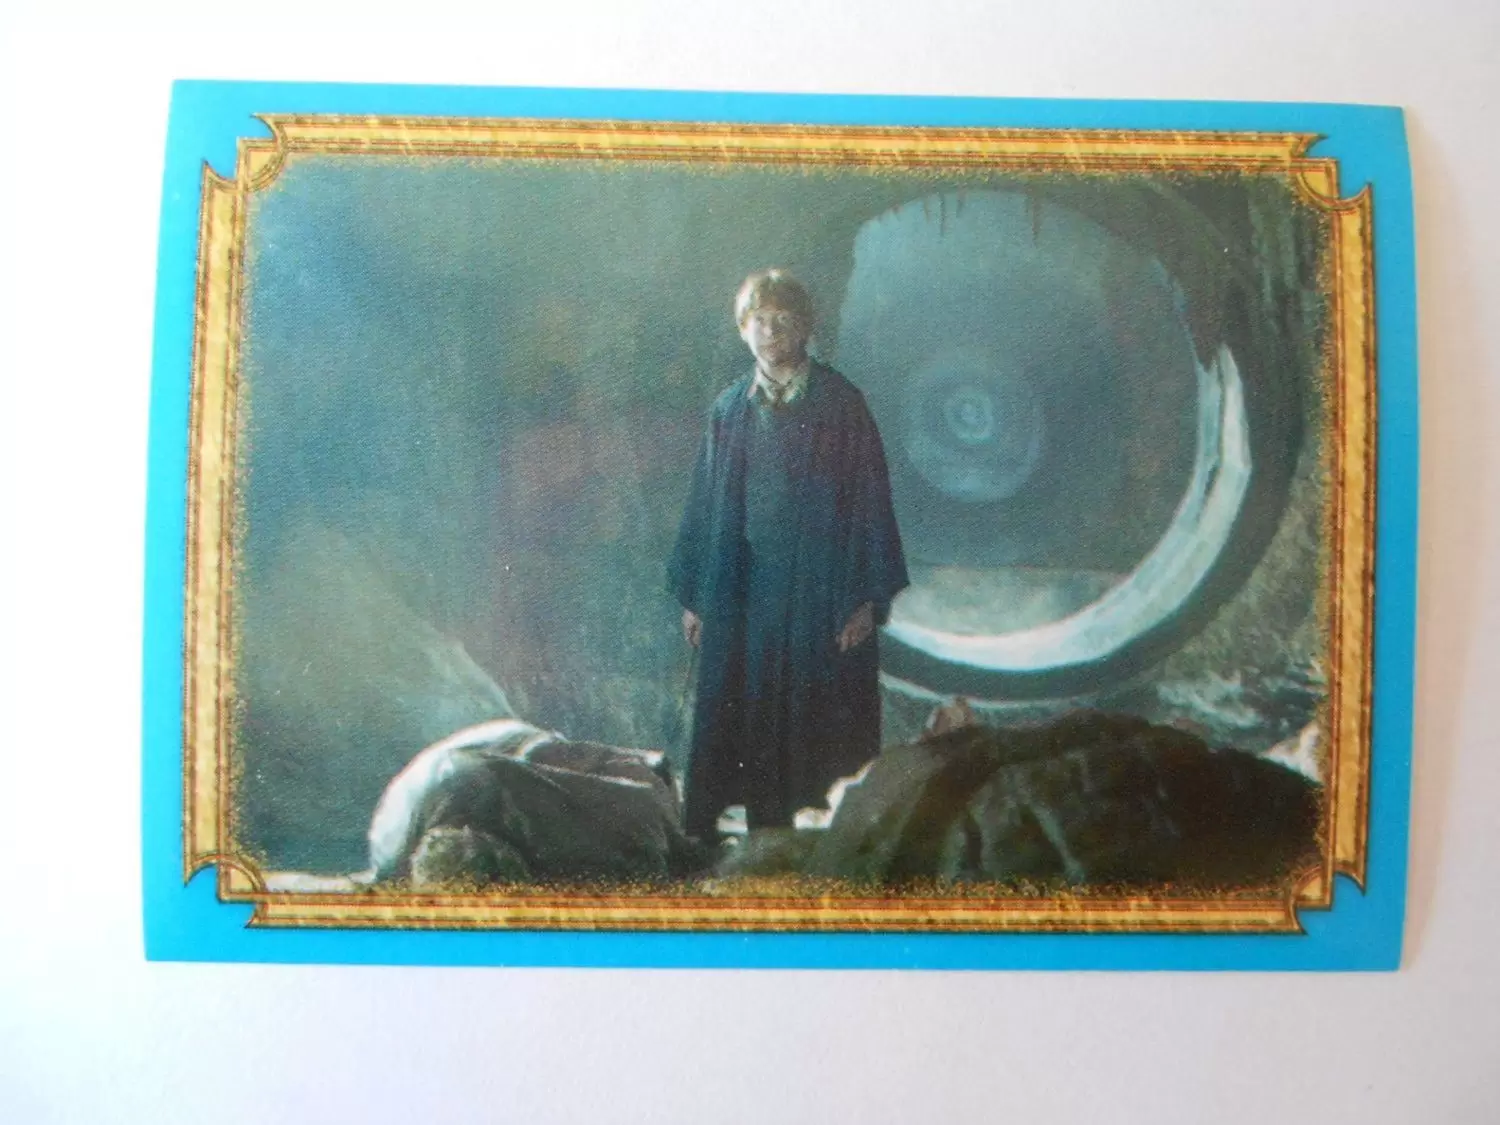 Harry Potter et la Chambre des Secrets - Image n°178